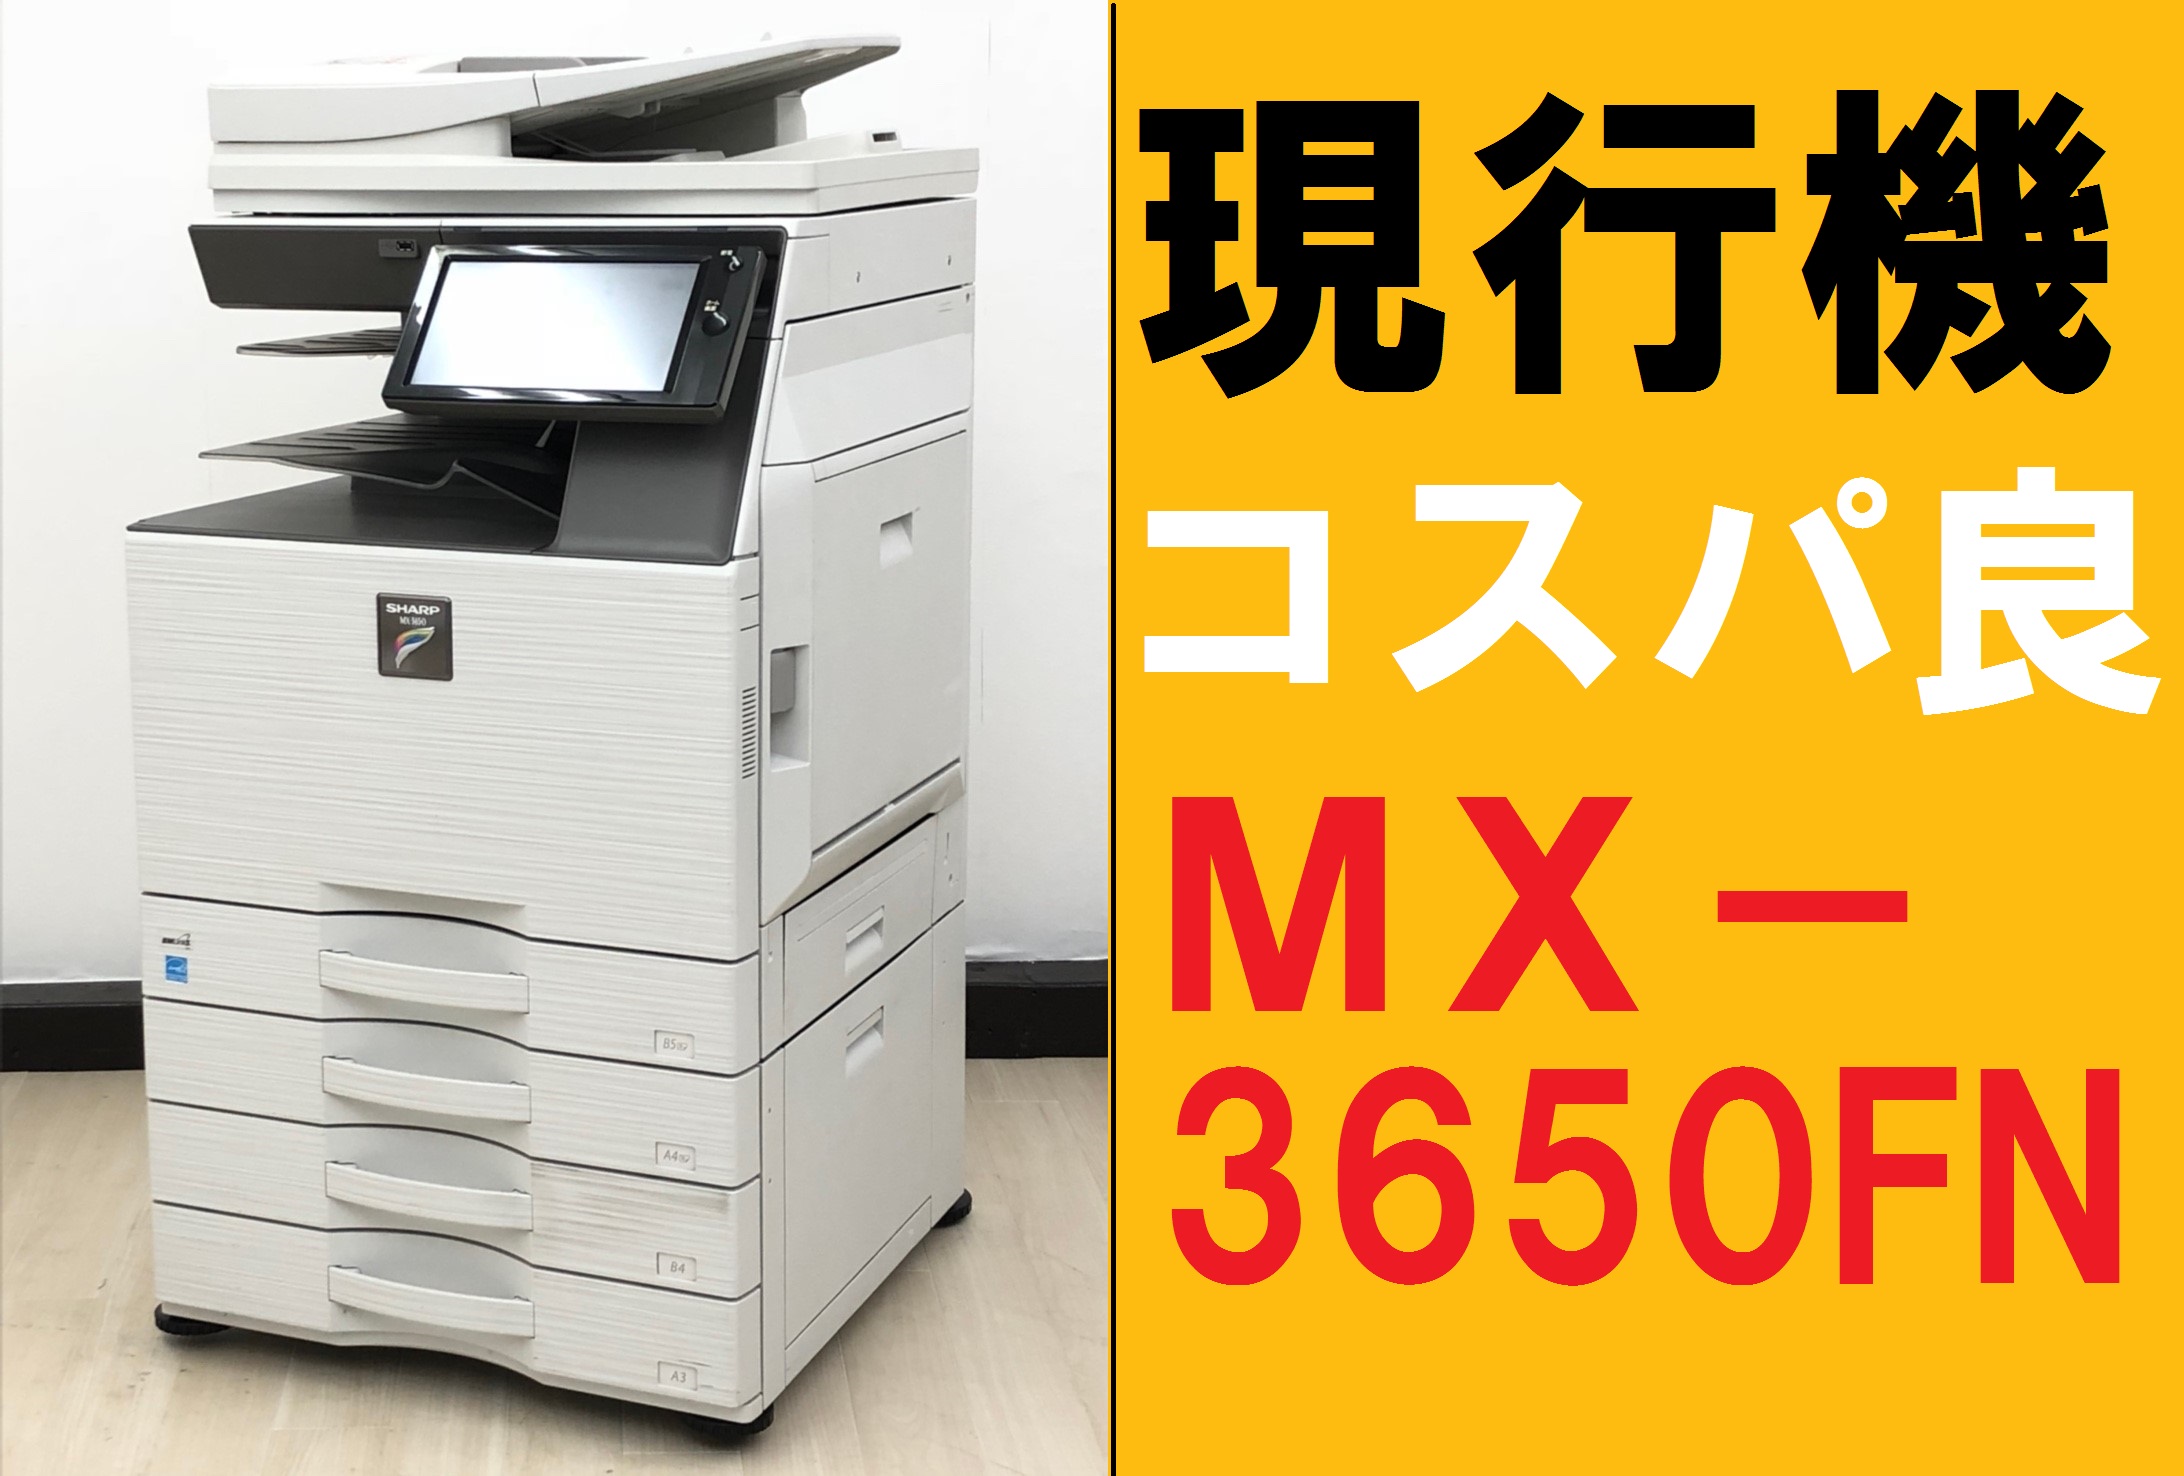 中古】MXシリーズ MX3650FN シャープ/SHARP カラー複合機(コピー機) 231806 中古オフィス家具ならオフィスバスターズ